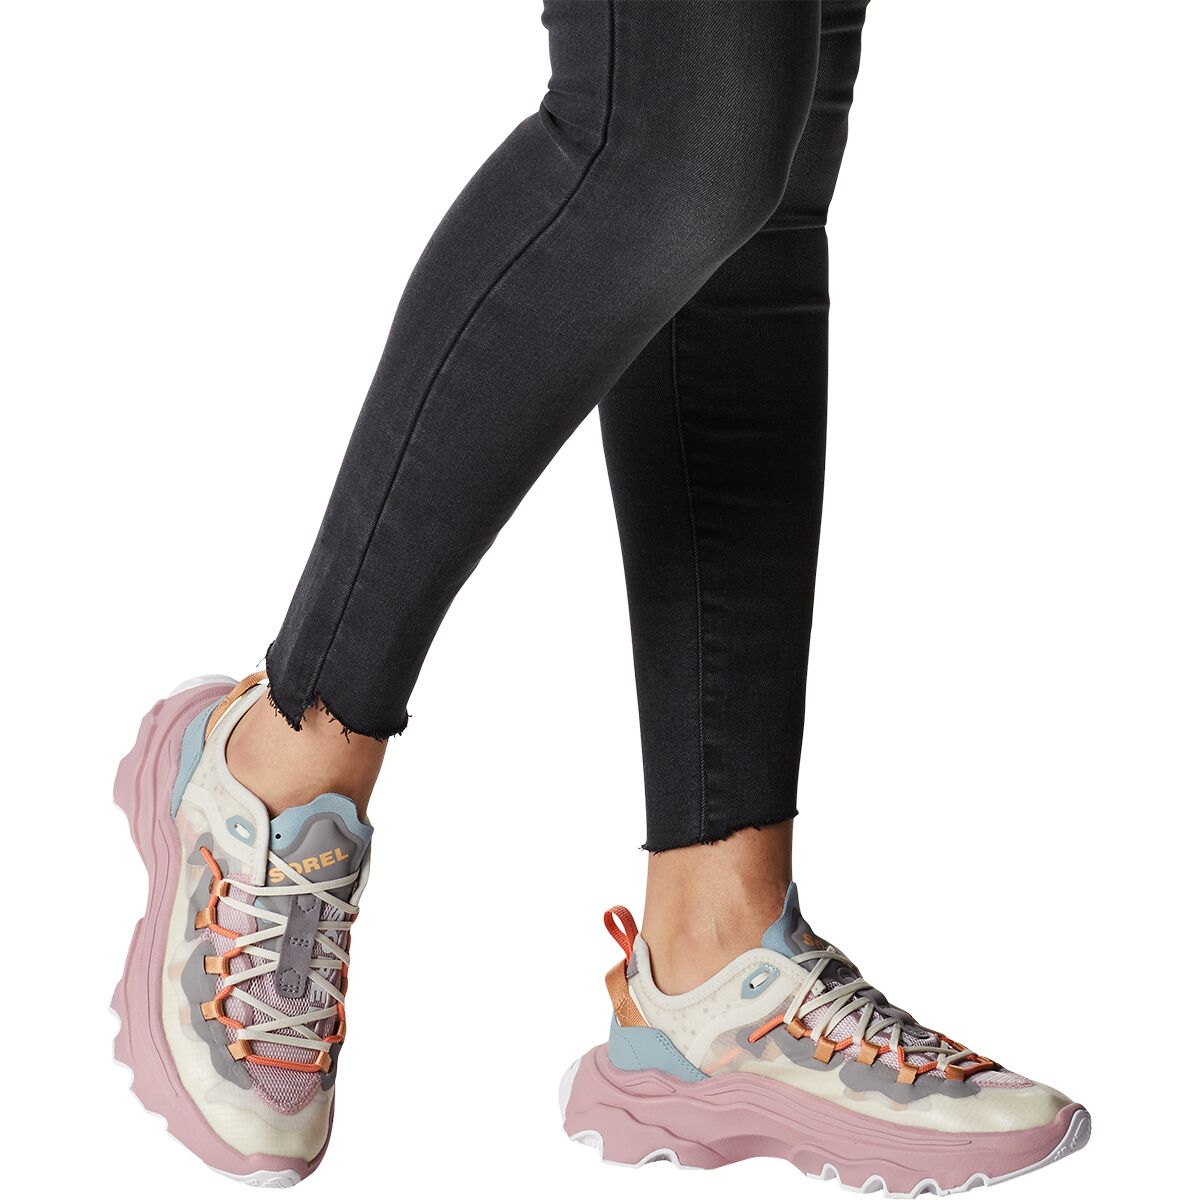 SOREL Kinetic Breakthru Tech Lace Sneaker - Women's - Footwear